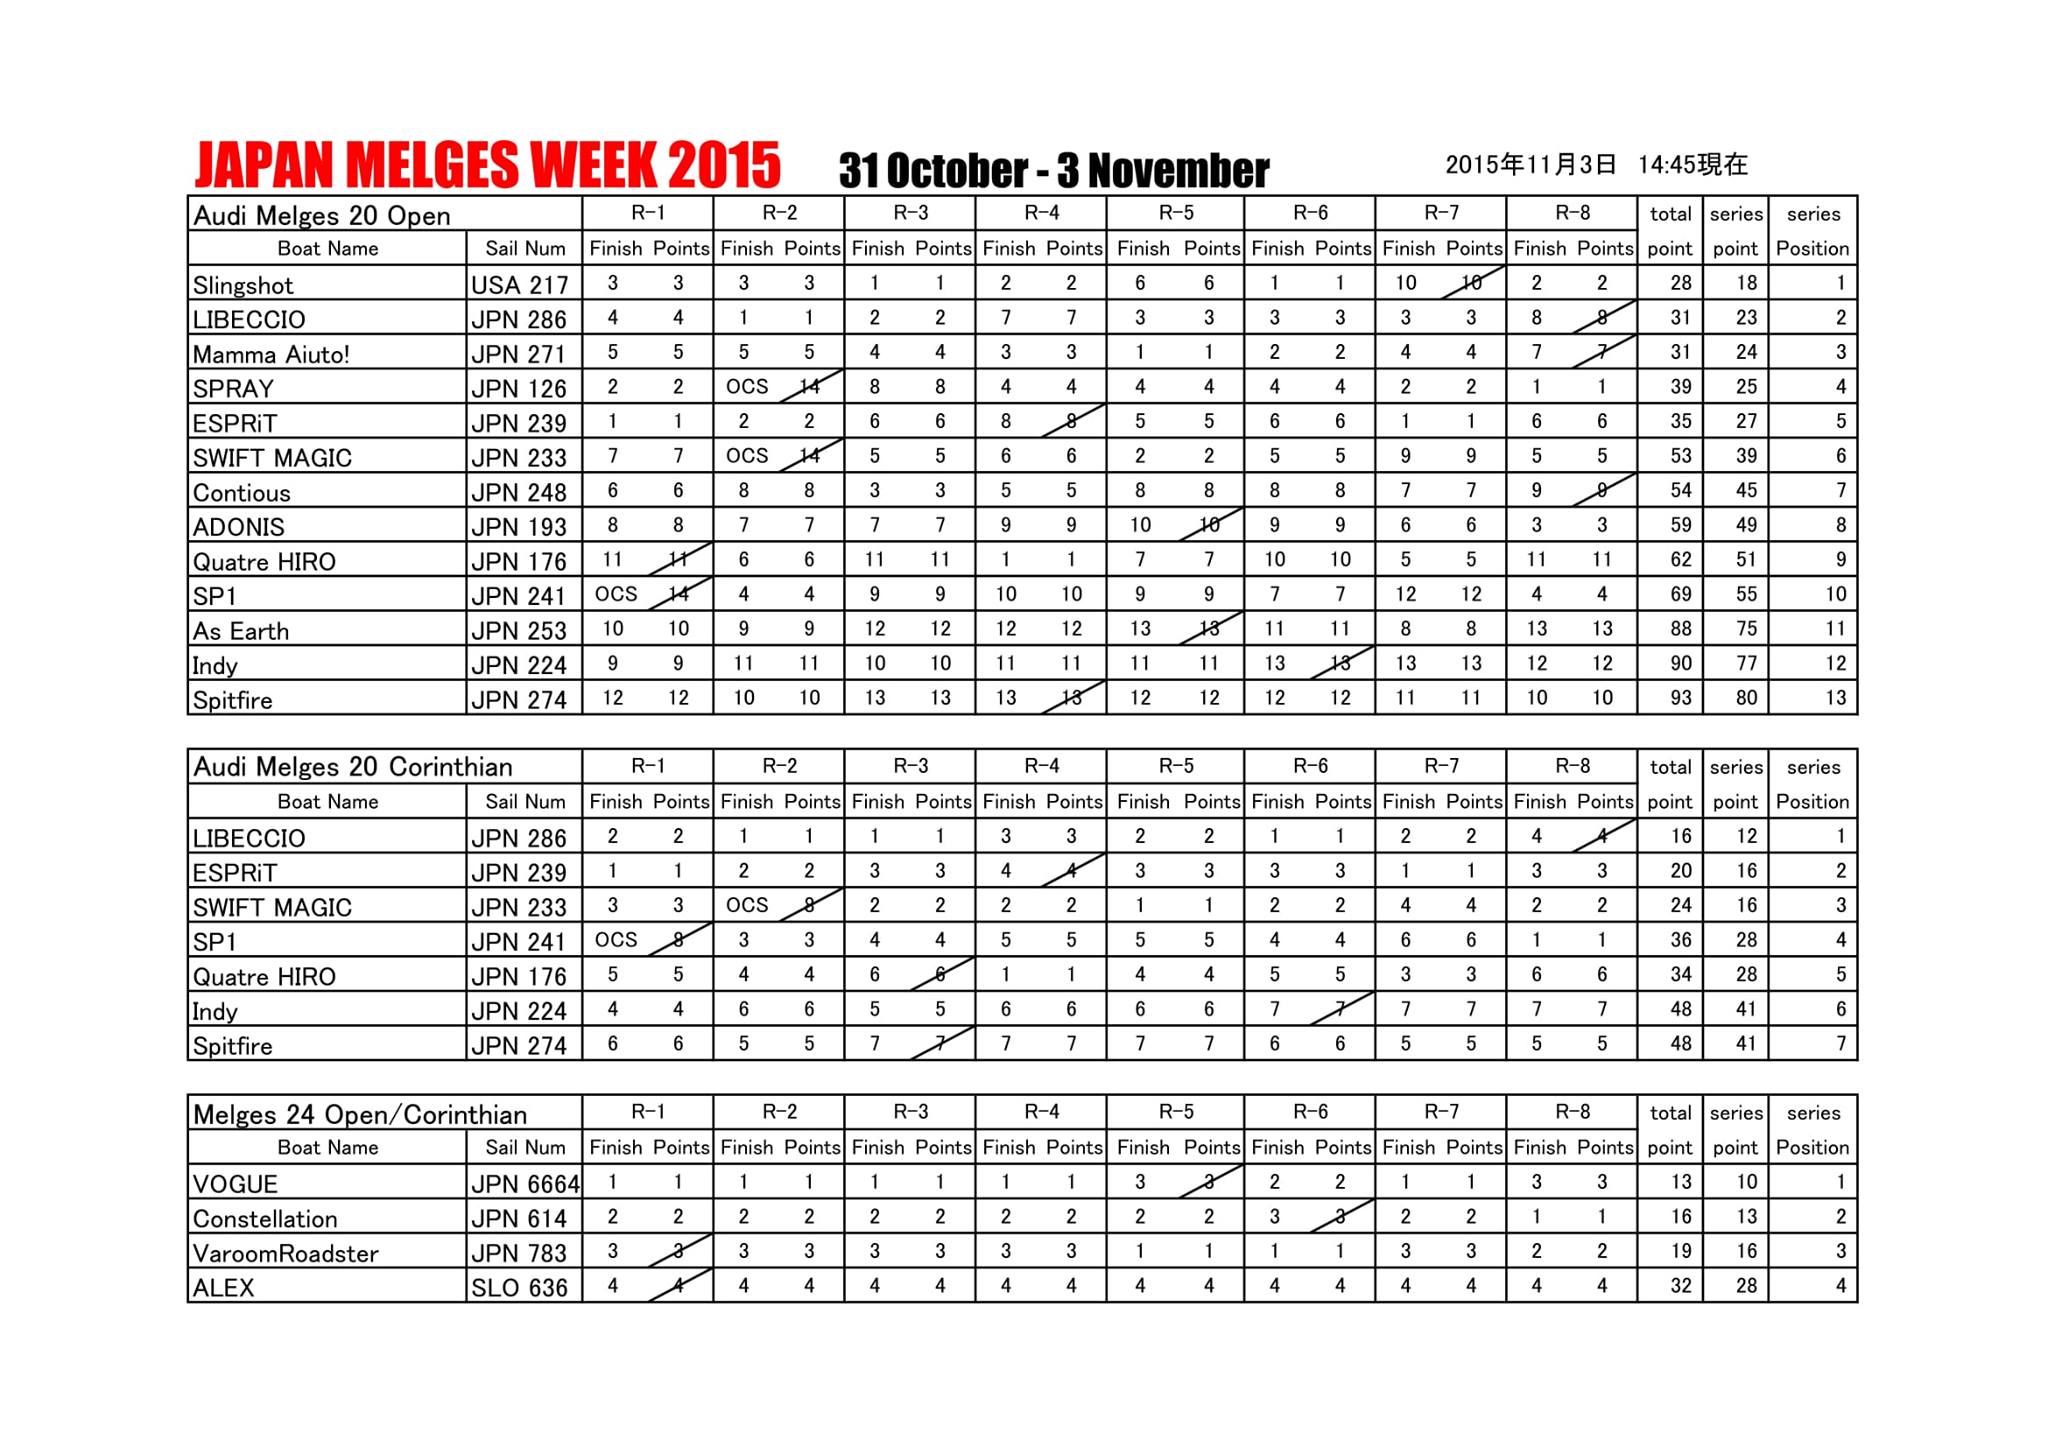 Japan Melges Week 2015 - results